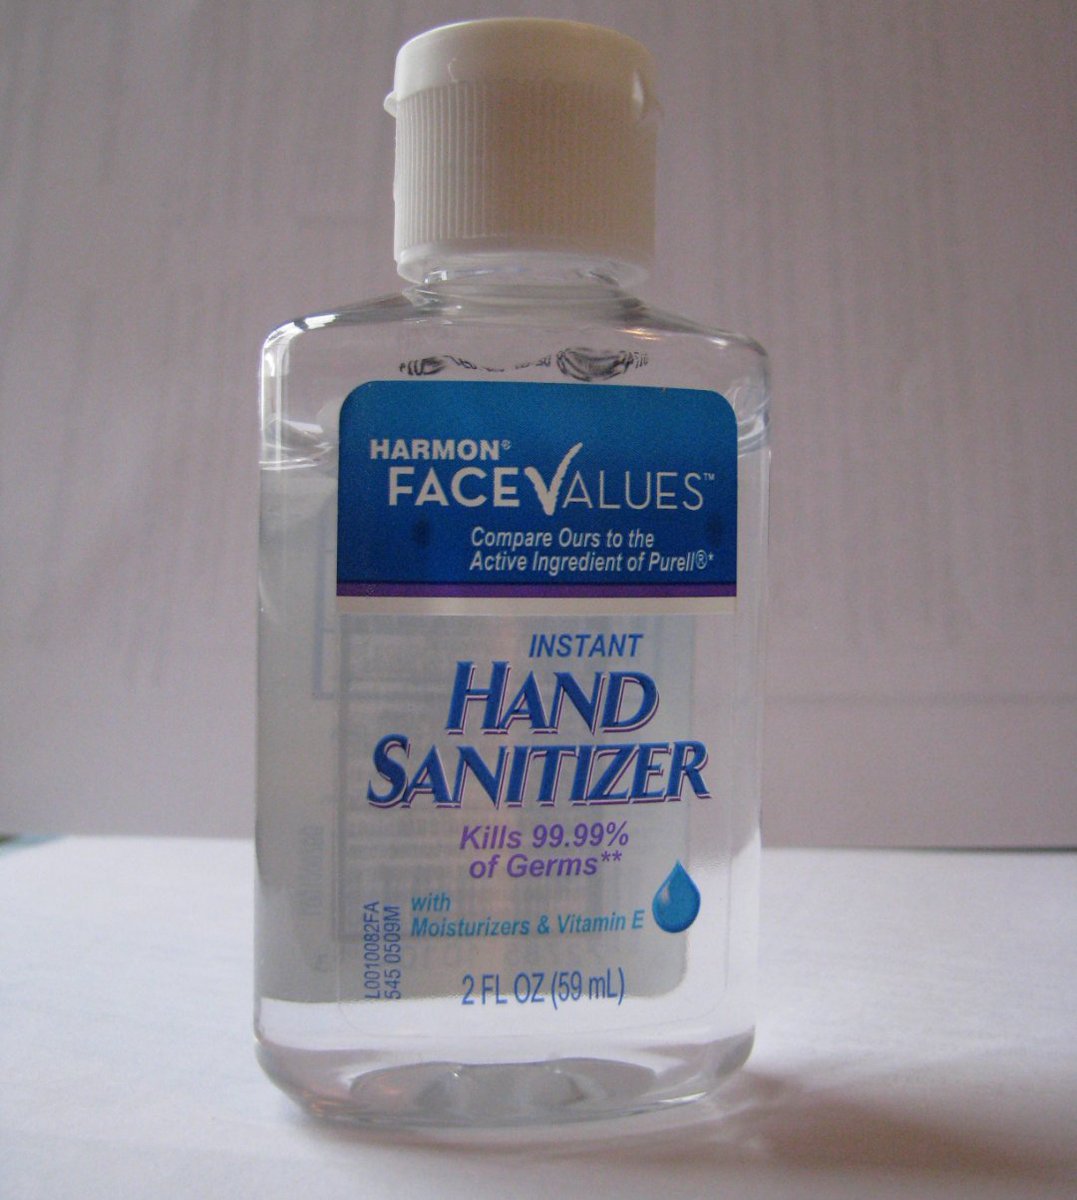 Hand sanitizer      Hand SANitizer